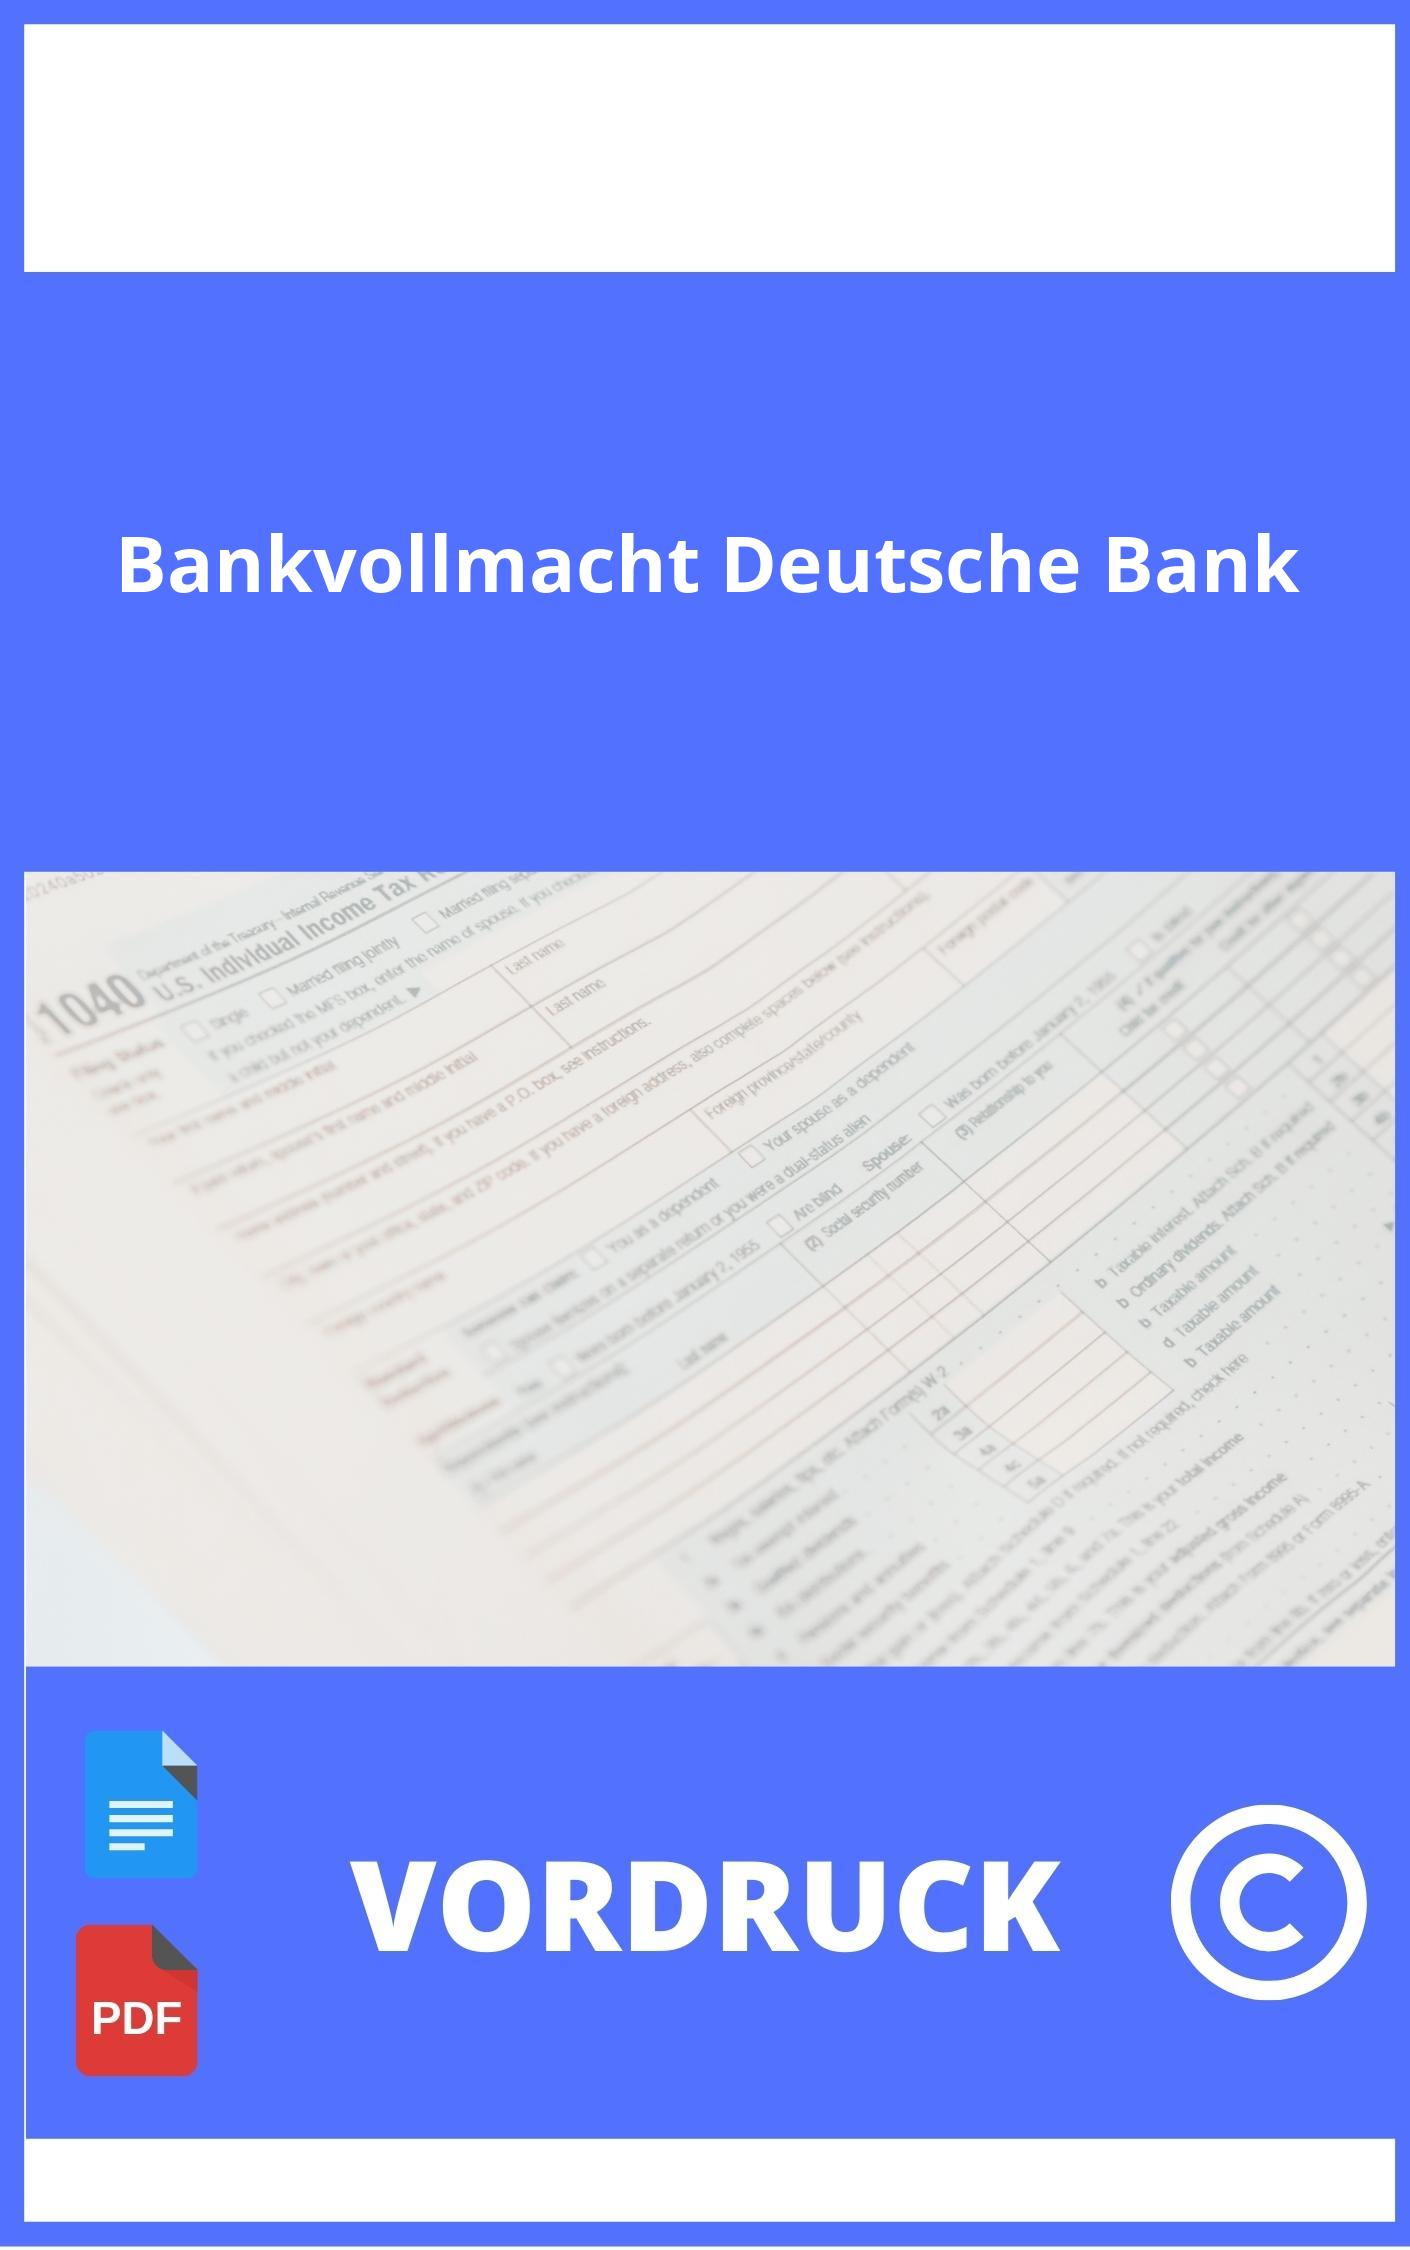 Bankvollmacht Deutsche Bank Vordruck